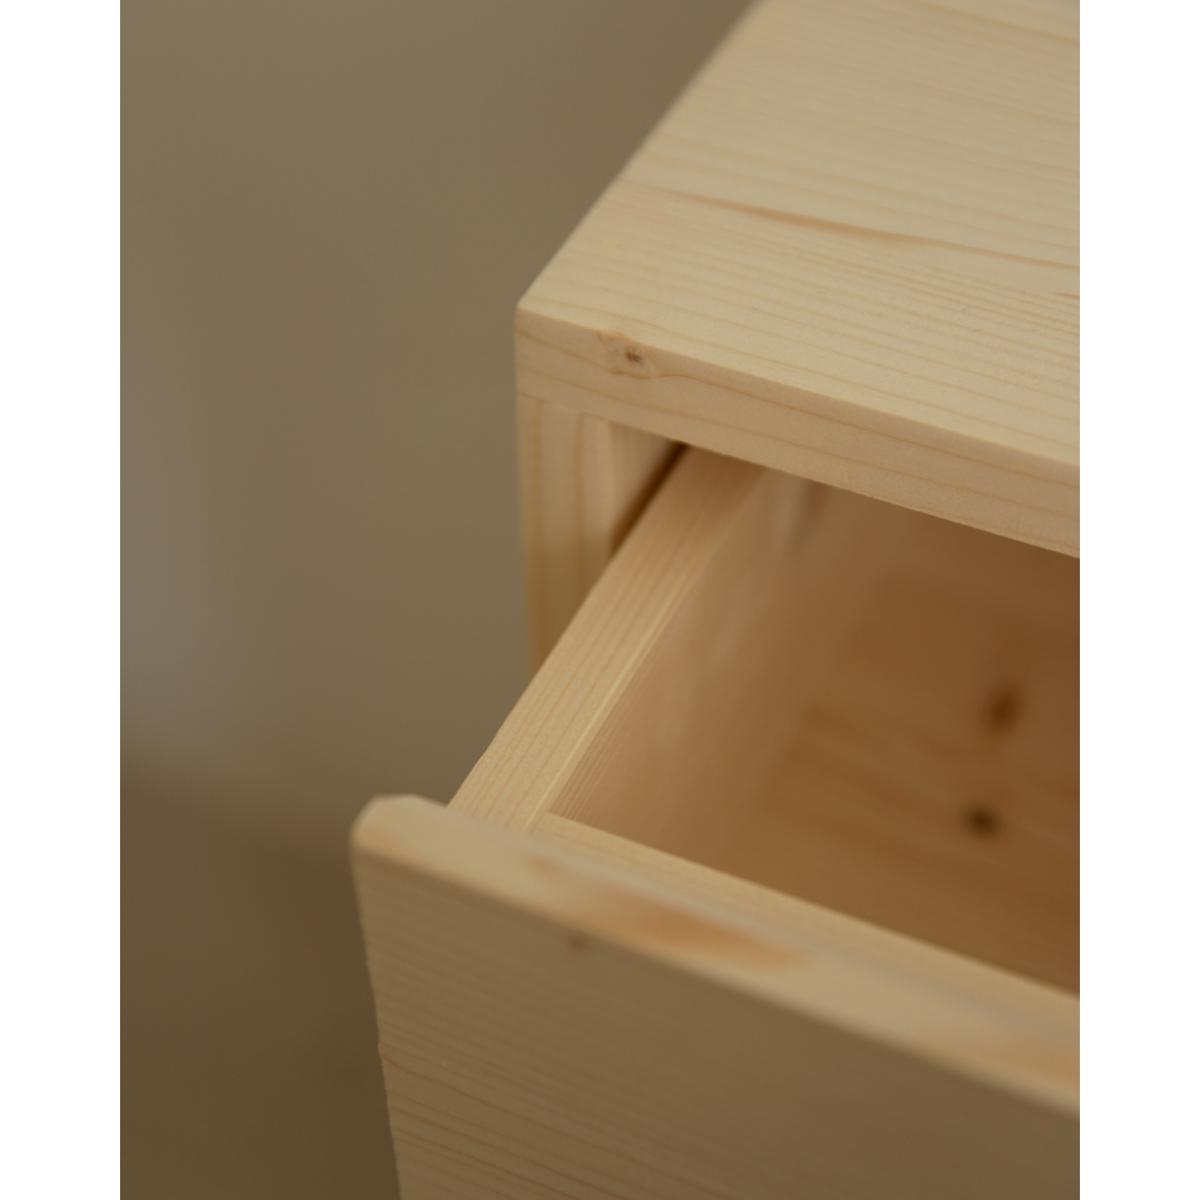 Table de chevet en bois massif avec un tiroir ton chêne moyen 60x40cm Hauteur: 60 Longueur: 40 Largeur: 29.5